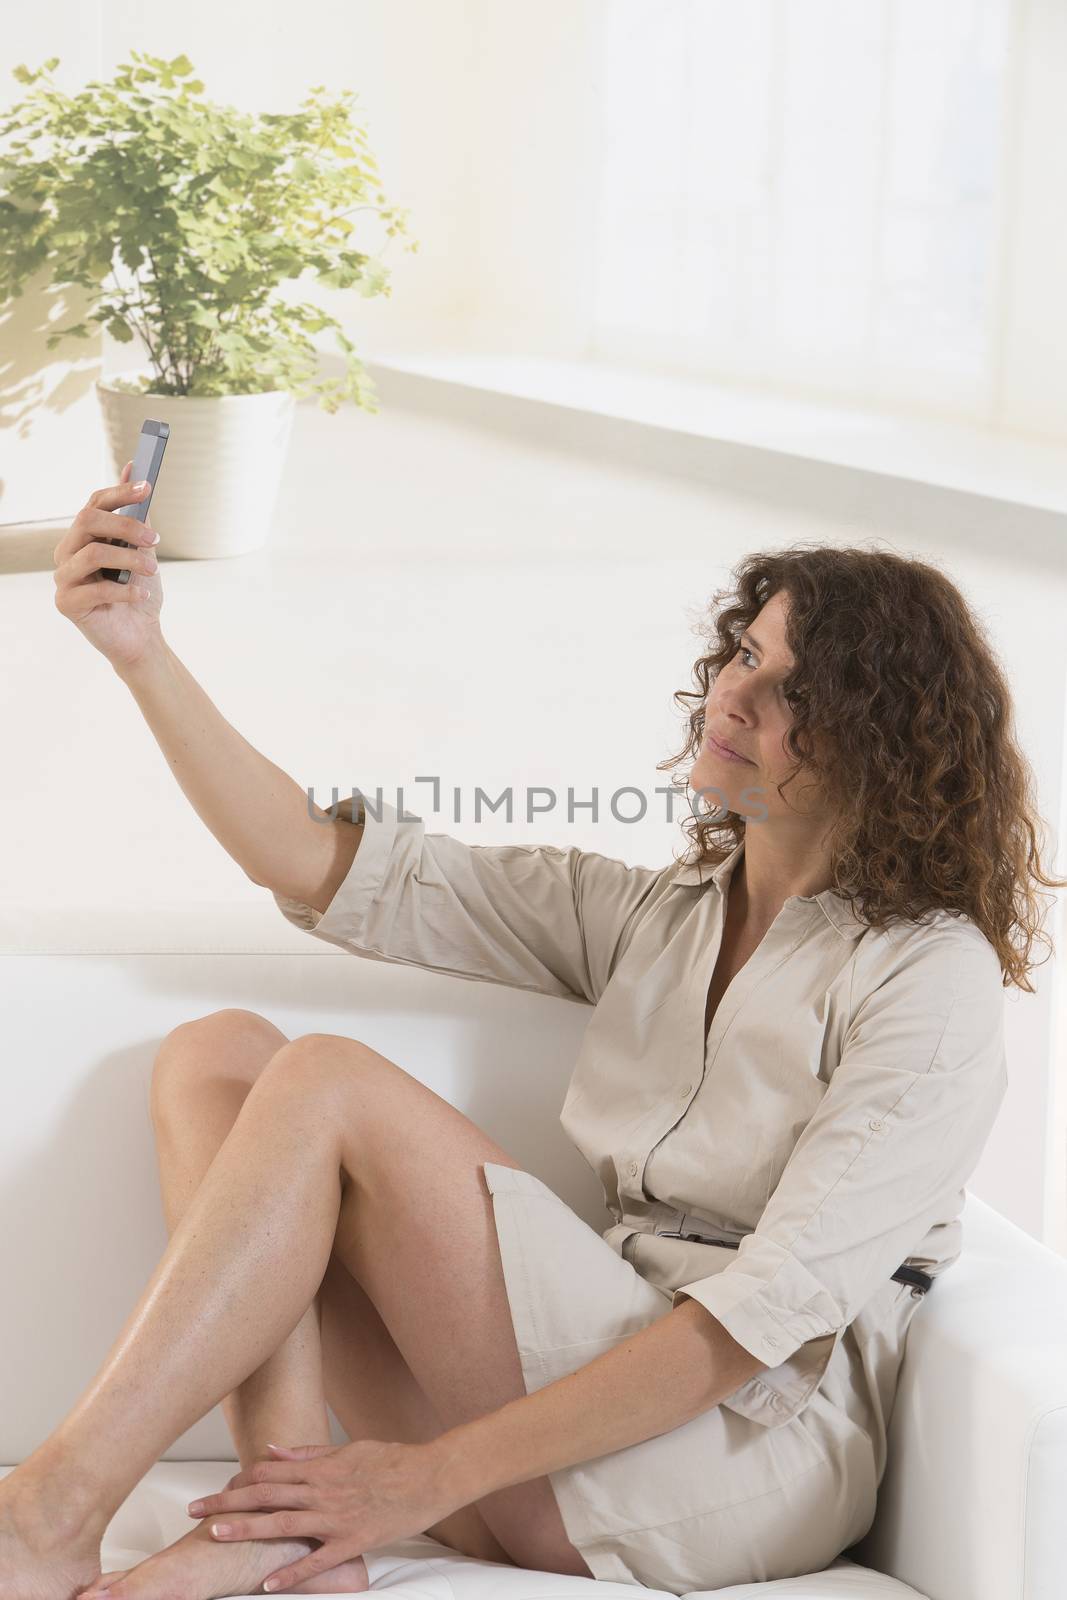 Beautiful woman in bed taking selfie by JPC-PROD